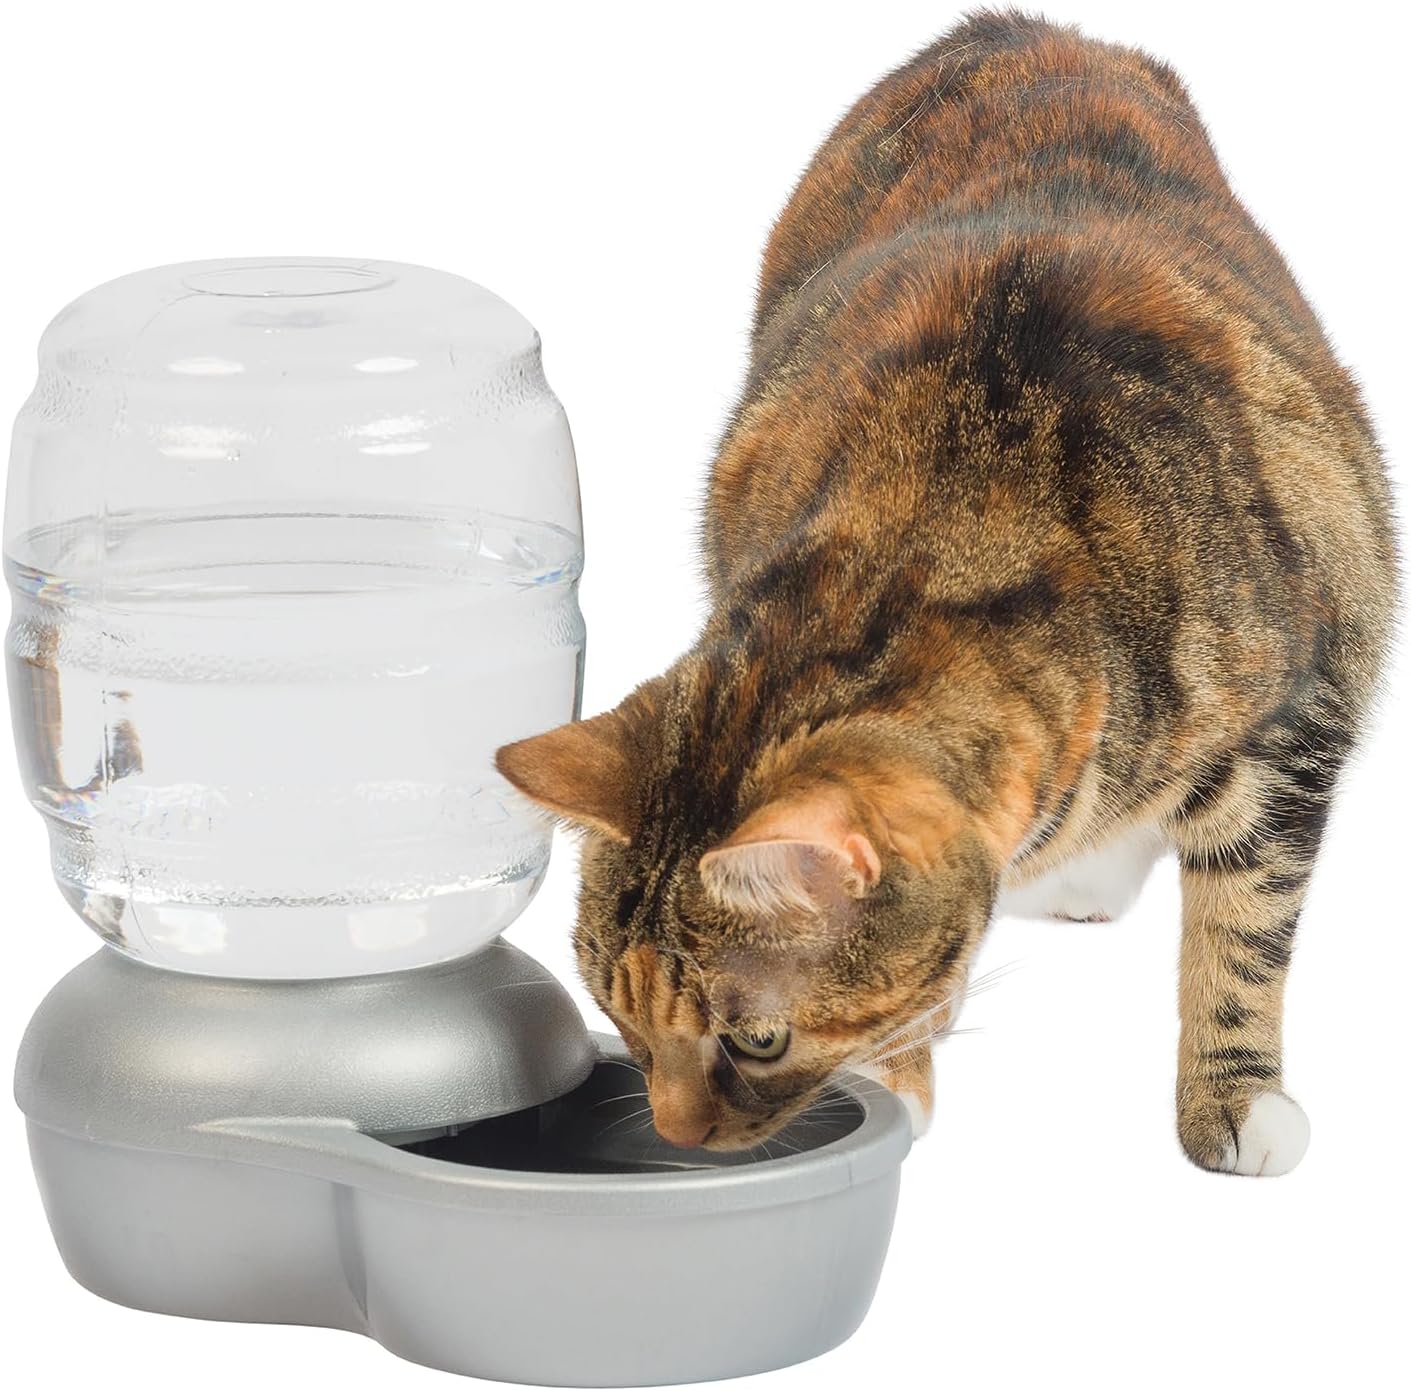 【水分充足】Petmate 重力自動寵物飲水器 0.5 加侖 $8.57